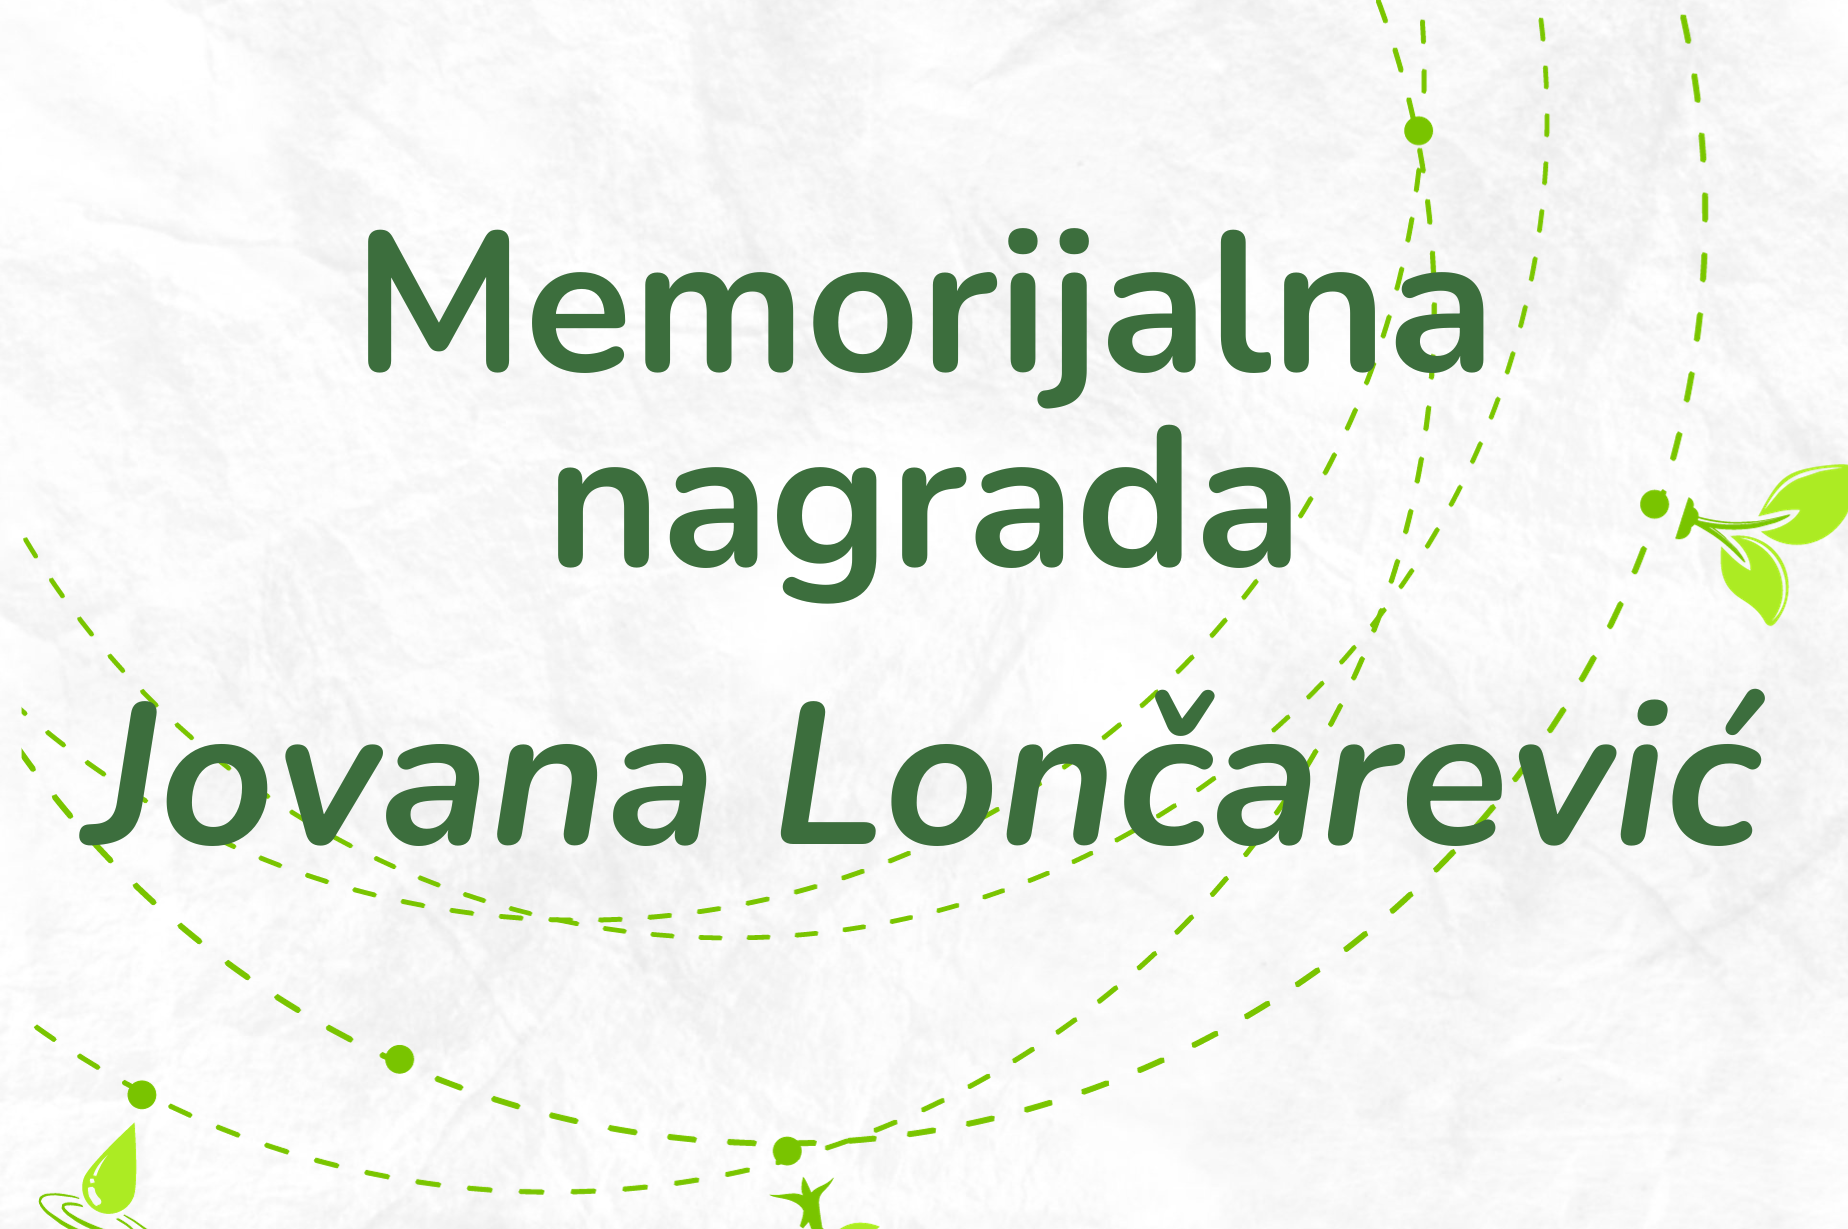 Memorijalna nagrada Jovana Lončarević